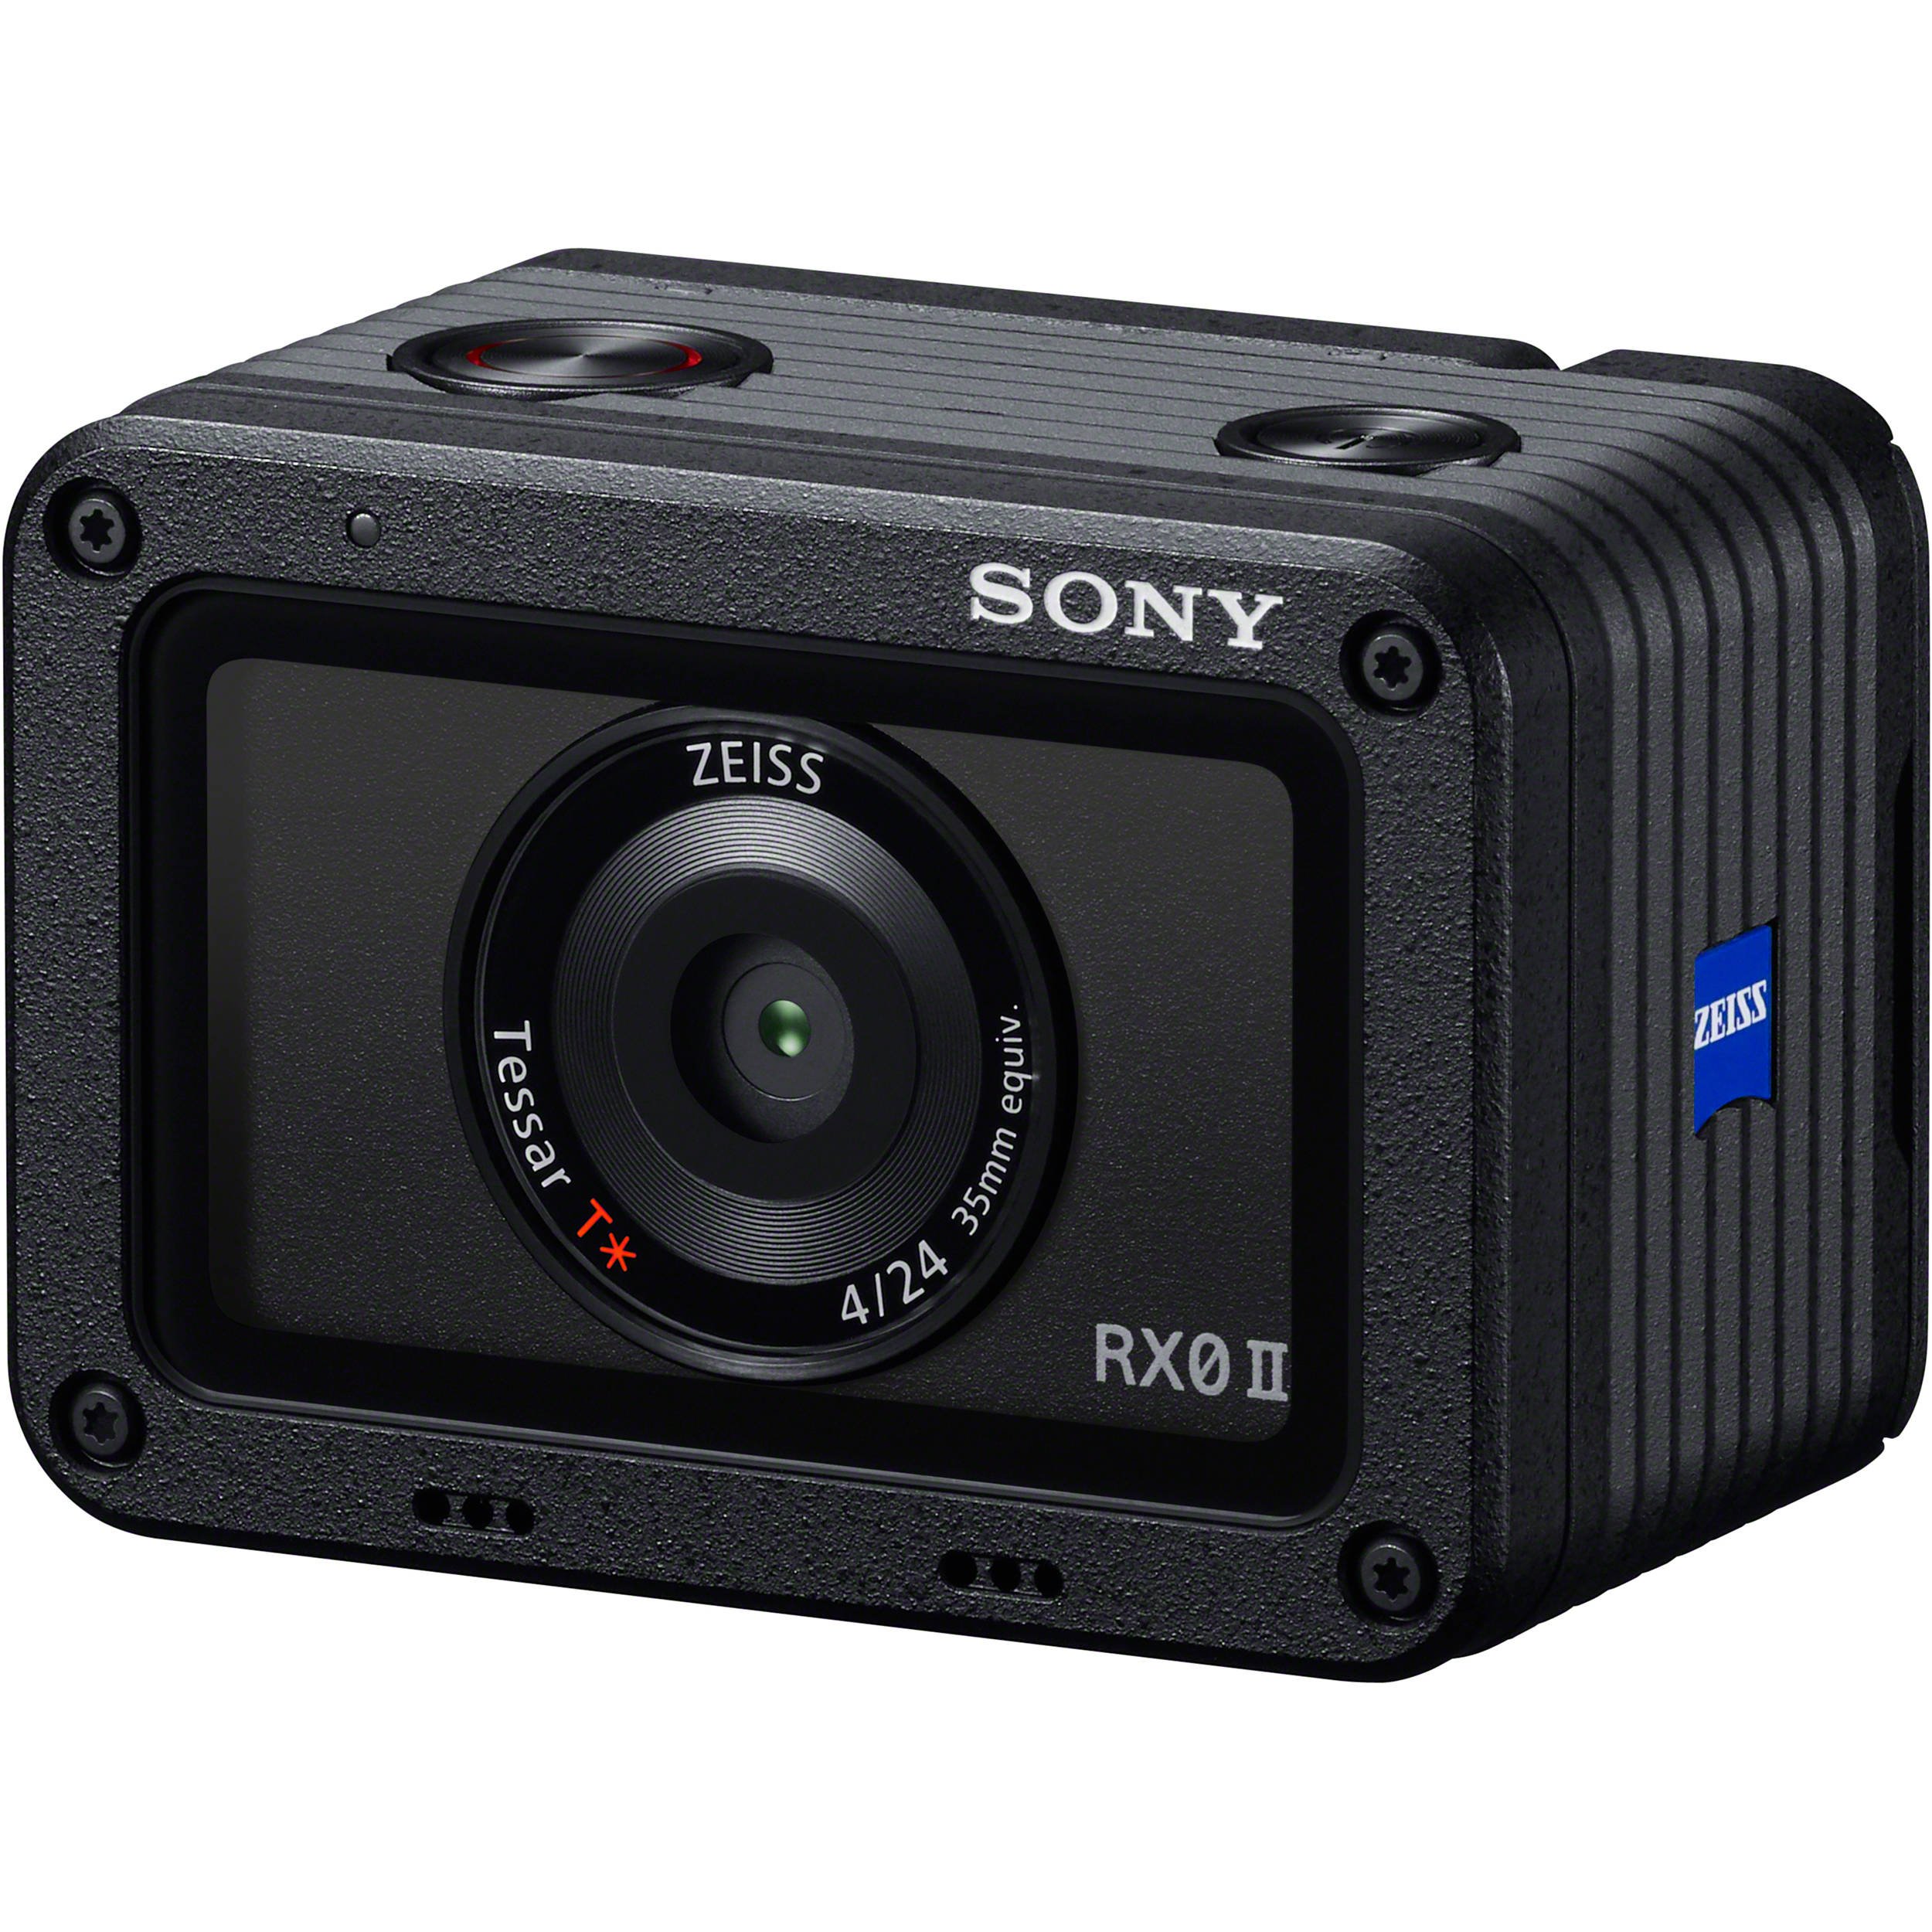 Miếng dán máy ảnh SONY A73 ống kính lens Samyang 2470 combo decal skin 3M  mẫu hình White Carbon trắng tinh xảo mới nhất bảo vệ chống xước làm đẹp cá  tính